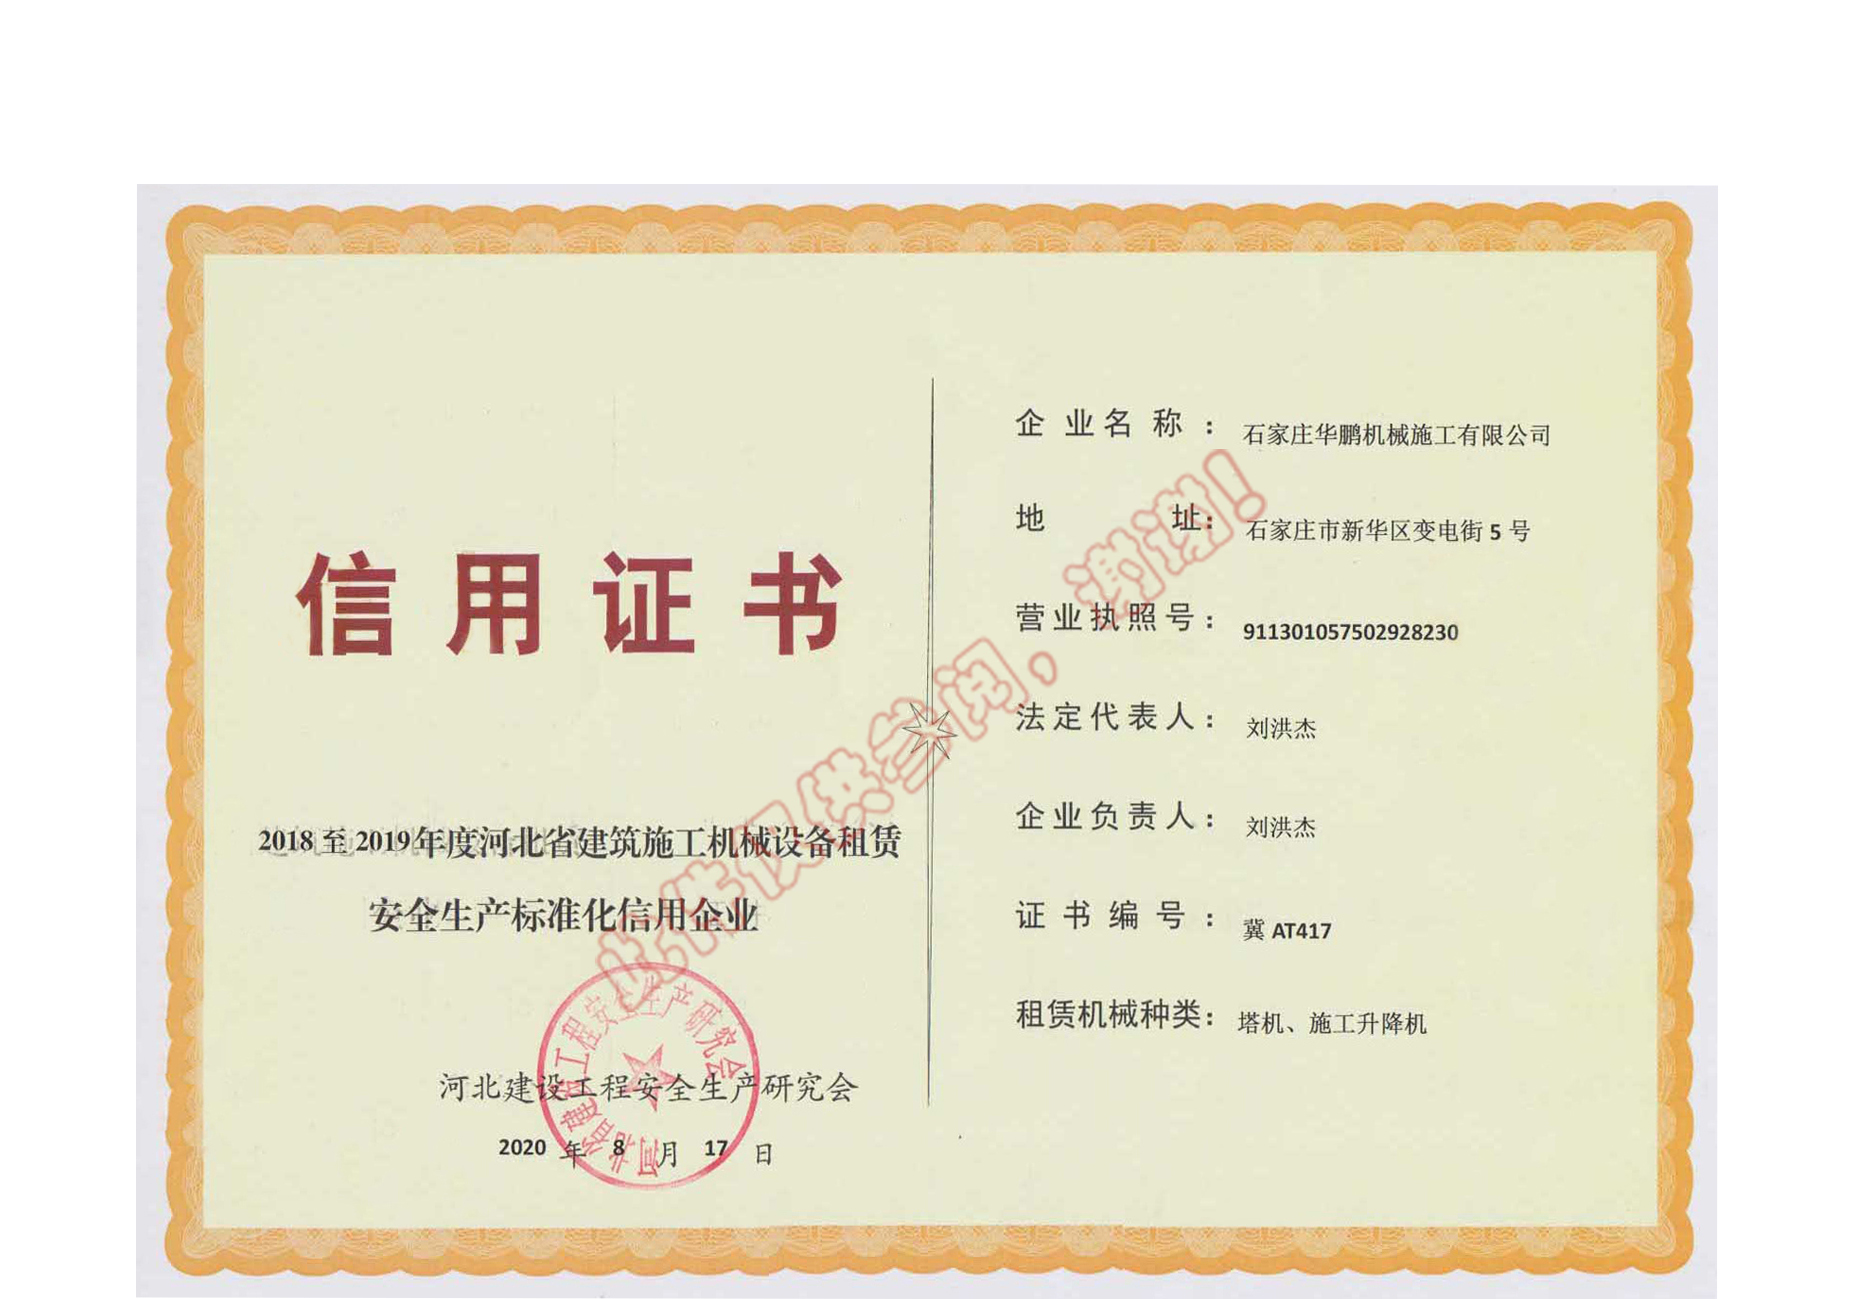 公司榮獲河北省建筑施工機械設備租賃安全生產標準化信用企業信用證書